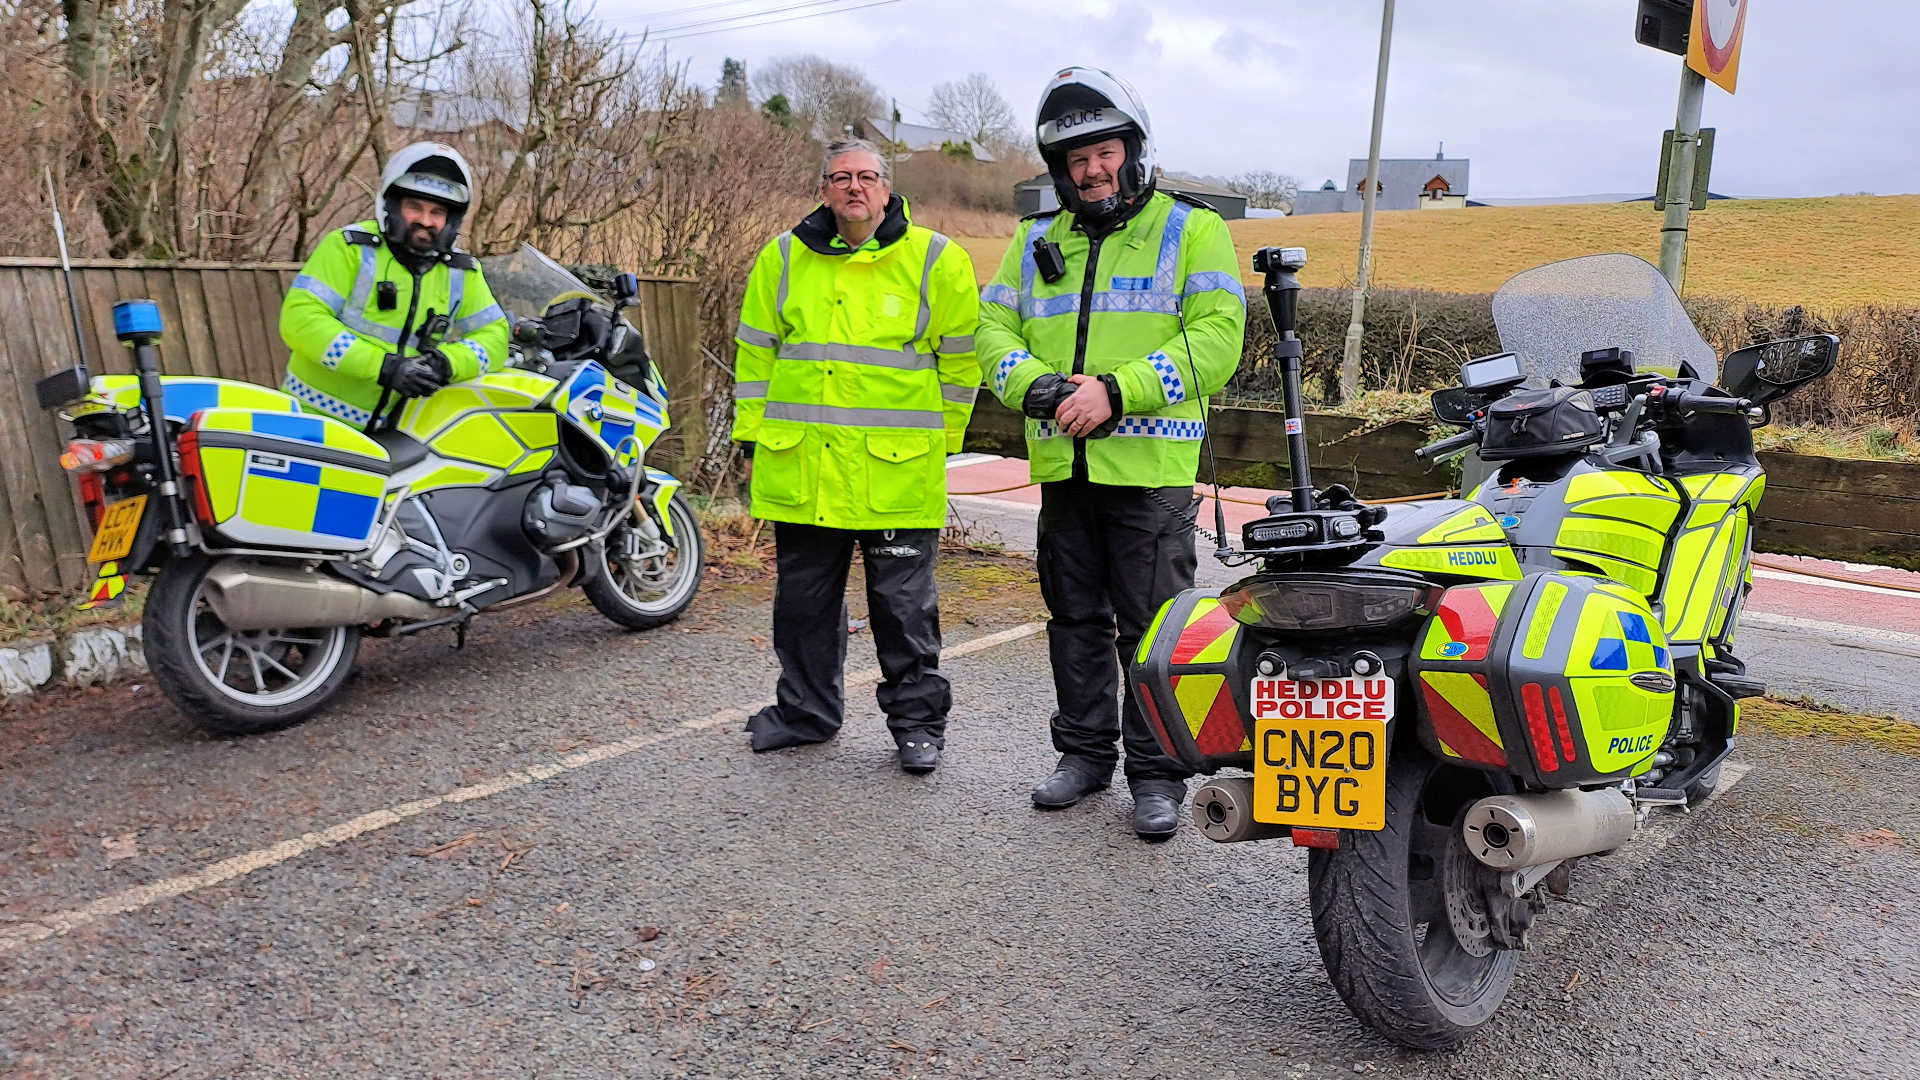 South Wales Police BikeSafe workshop roadside debrief